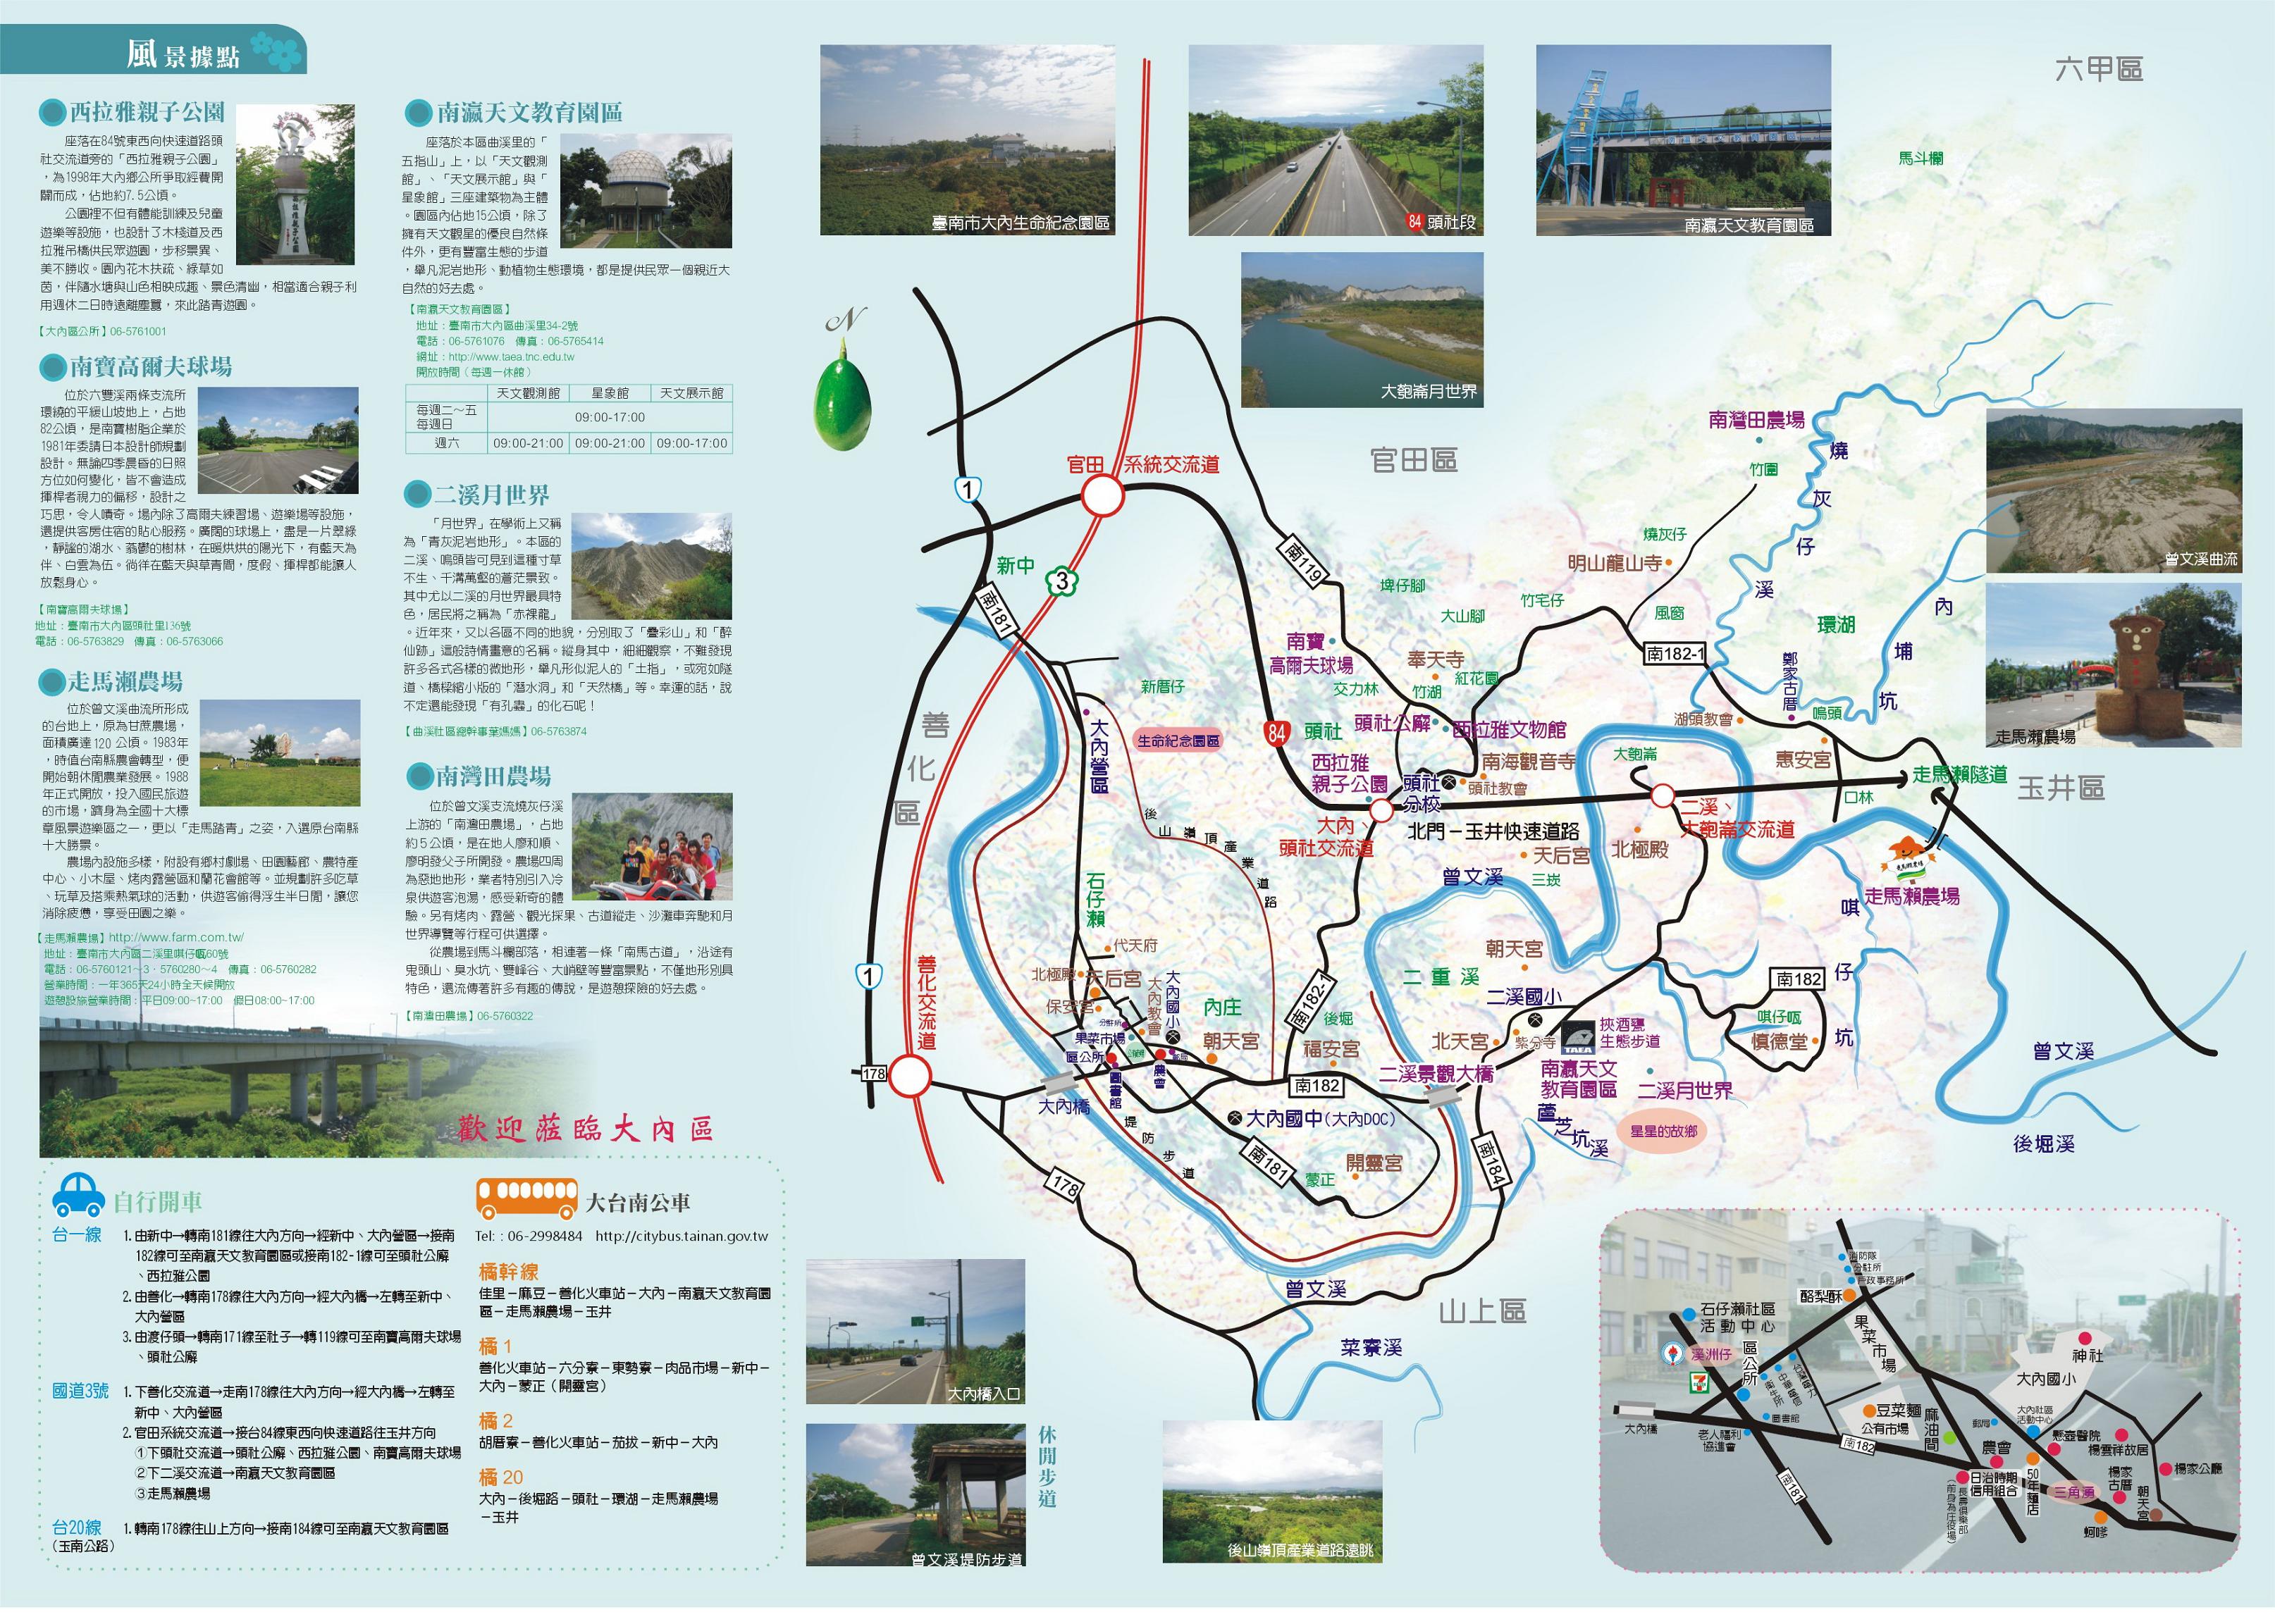 導覽圖背面介紹有本區之風景據點、交通路線圖及如何自行開車或搭乘大台南公車至本區